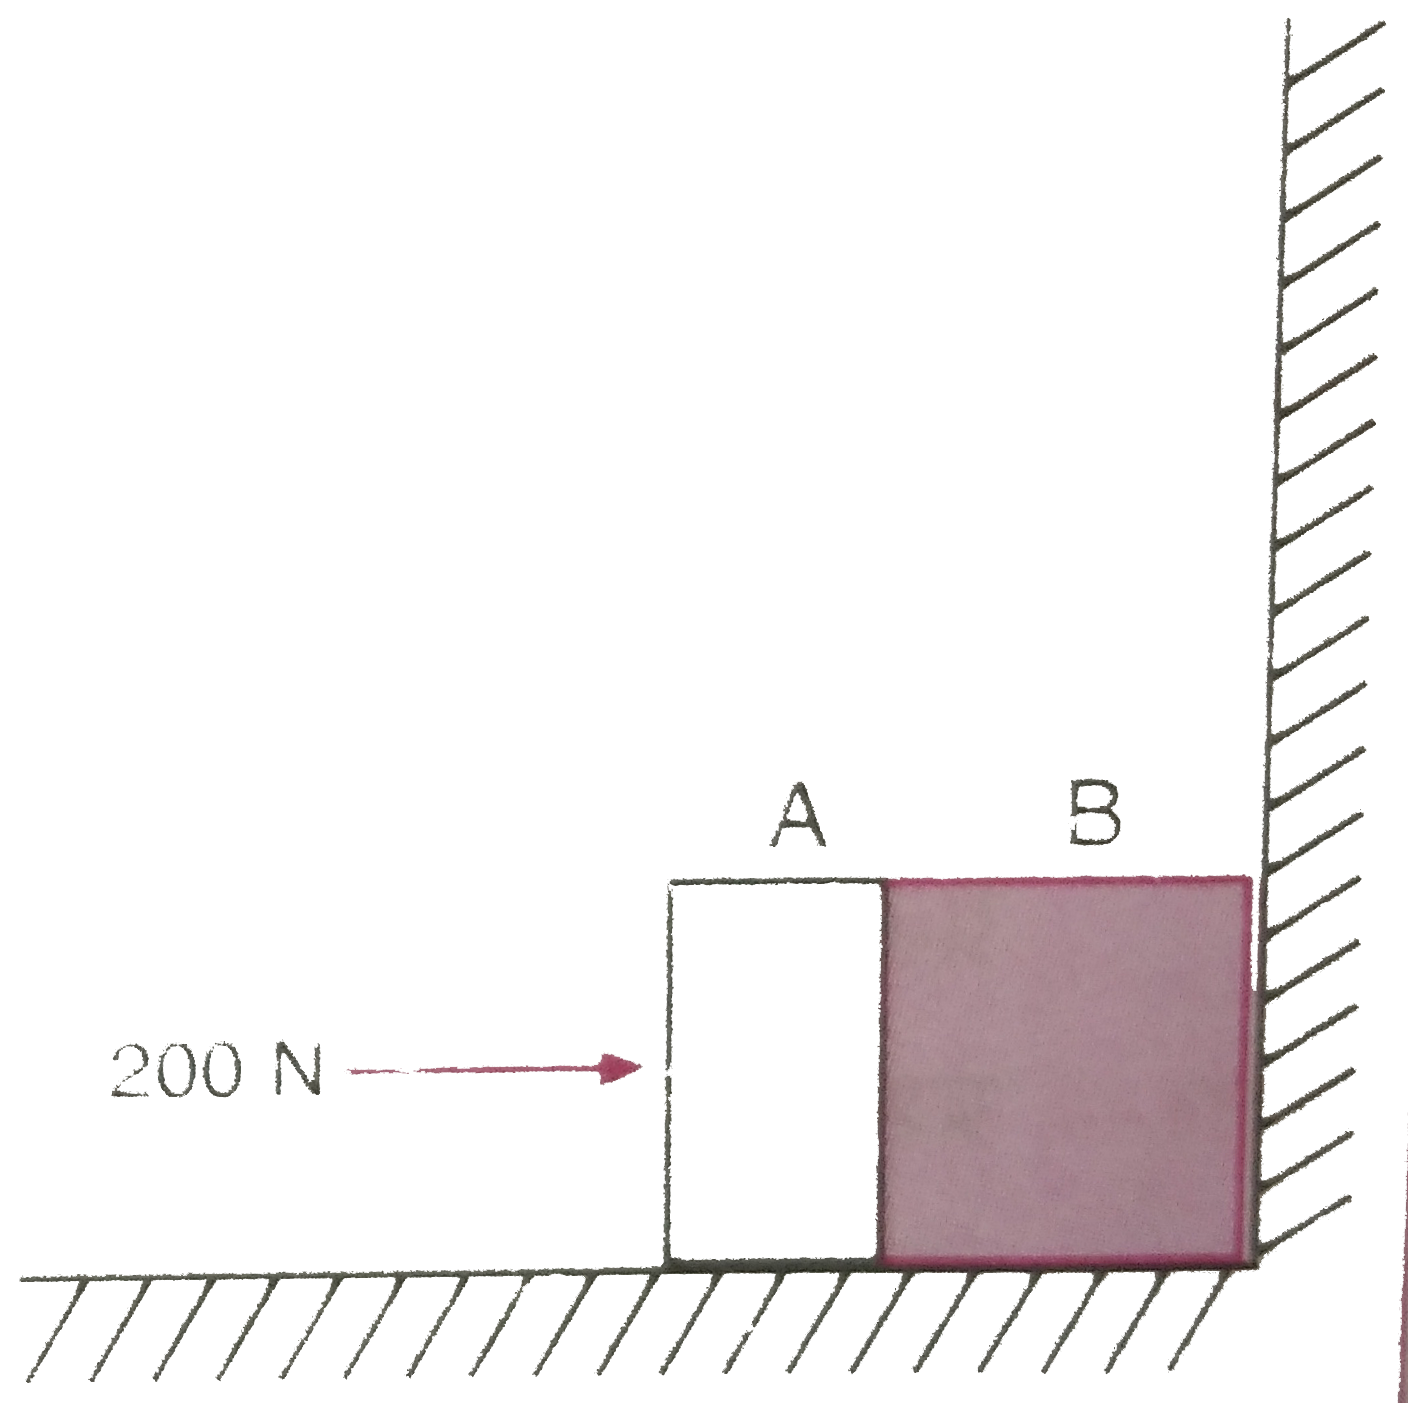 दो पिण्ड A तथा B, जिनकी संहति क्रमशः 5 किग्रा तथा 10 किग्रा है एक-दूसरे के संपर्क में के मेज पर किसी दृढ विभाजक दीवार के सामने विराम में रखे है (चित्र 6.32) | पिण्डो तथा मेज के बीच घर्षण गुणांक 0*15 है 200 न्यूटन का कोई बल क्षैतिजतः A पर आरोपित किया जाता है (a) विभाजक दीवार की प्रतिक्रया तथा (b) A तथा B के बीच क्रिया - प्रतिक्रिया बल क्या है ? विभाजक दीवार को हटाने पर क्या होता है ? यदि पिण्ड गतिशील है तो क्या (b) का उत्तर बदल जाएगा ? mu(s) तथा mu(k) के बीच अंतर की उपेक्षा कीजिए ।